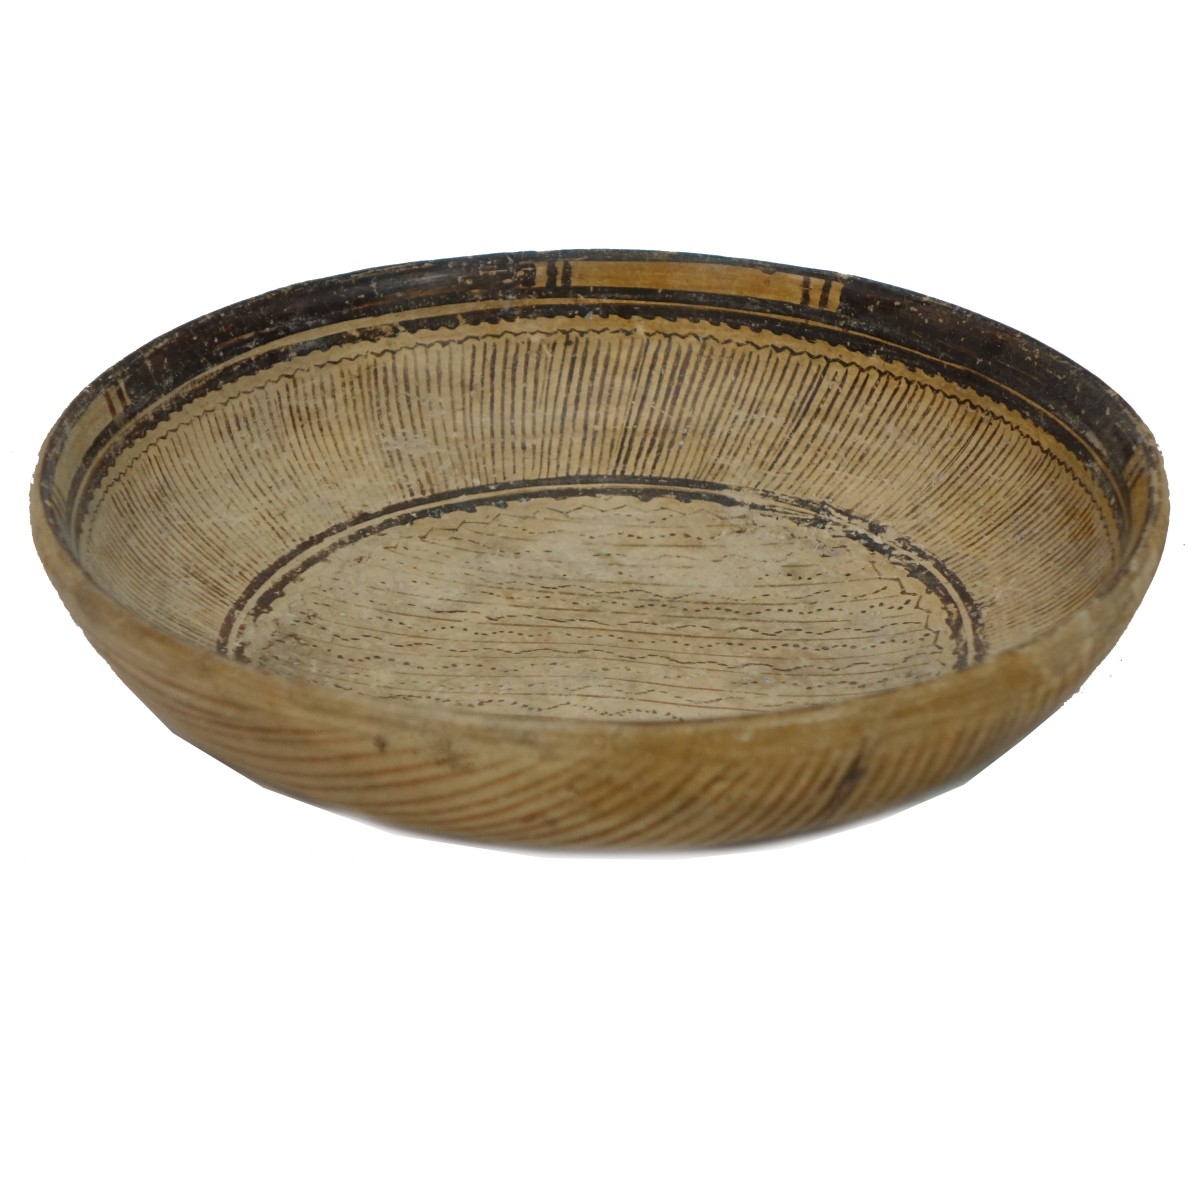 Pre Columbian or Later Ceramic Bowl